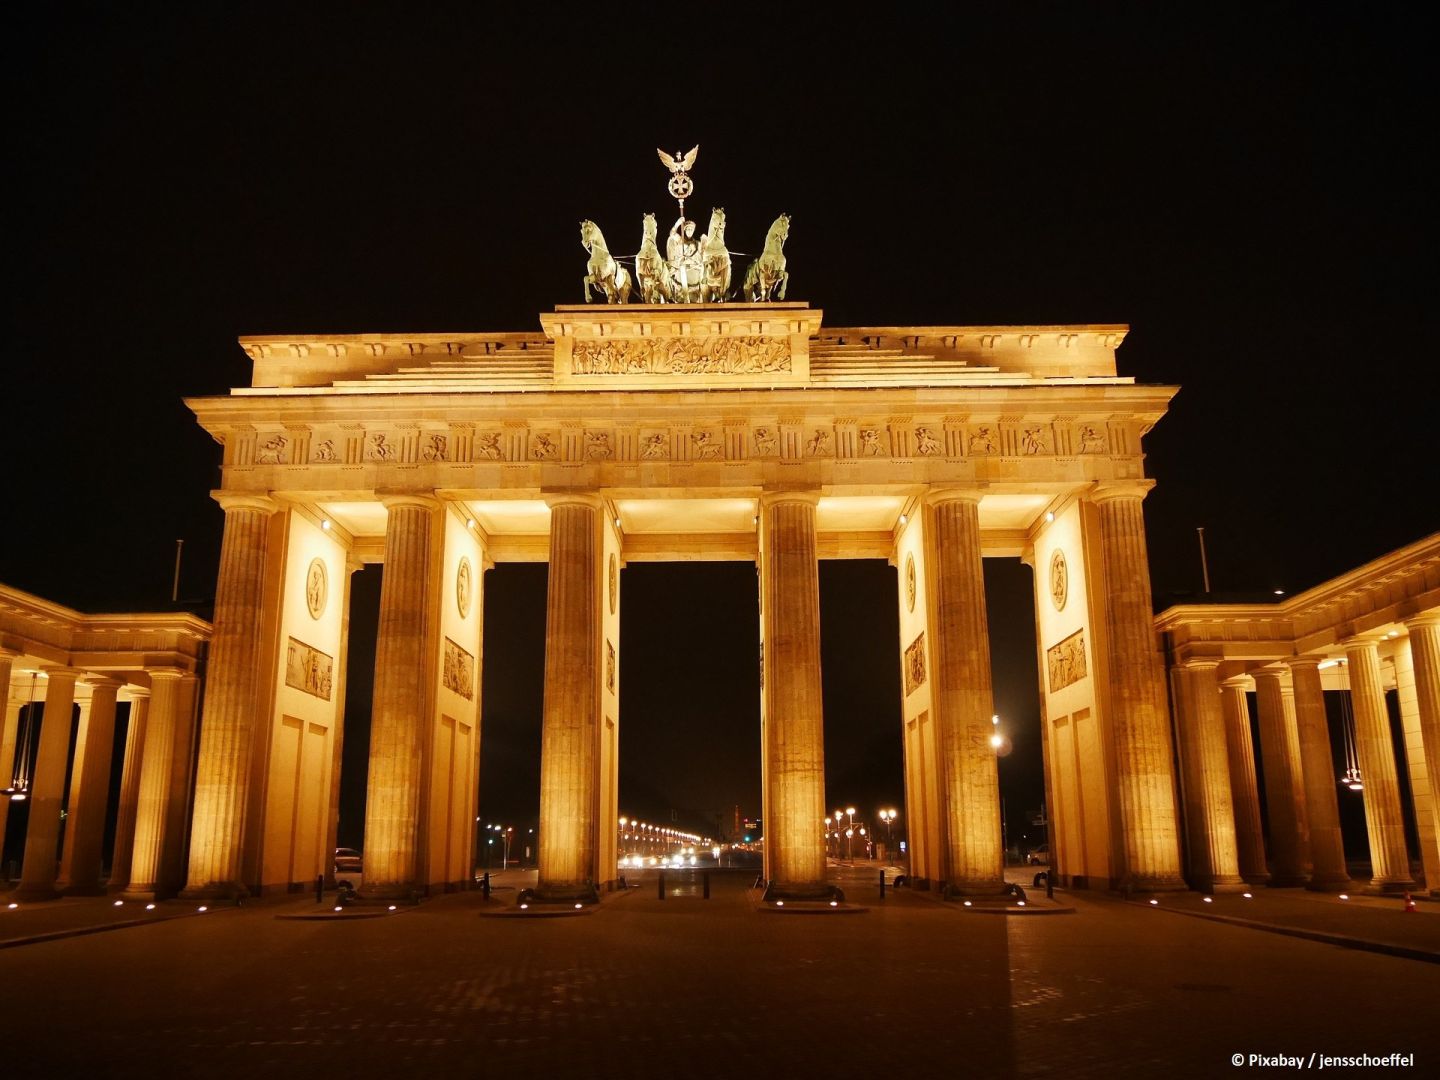 Deutschland erreicht nach leichtem Wachstum im 2. Quartal wieder das BIP-Niveau vor der Pandemie